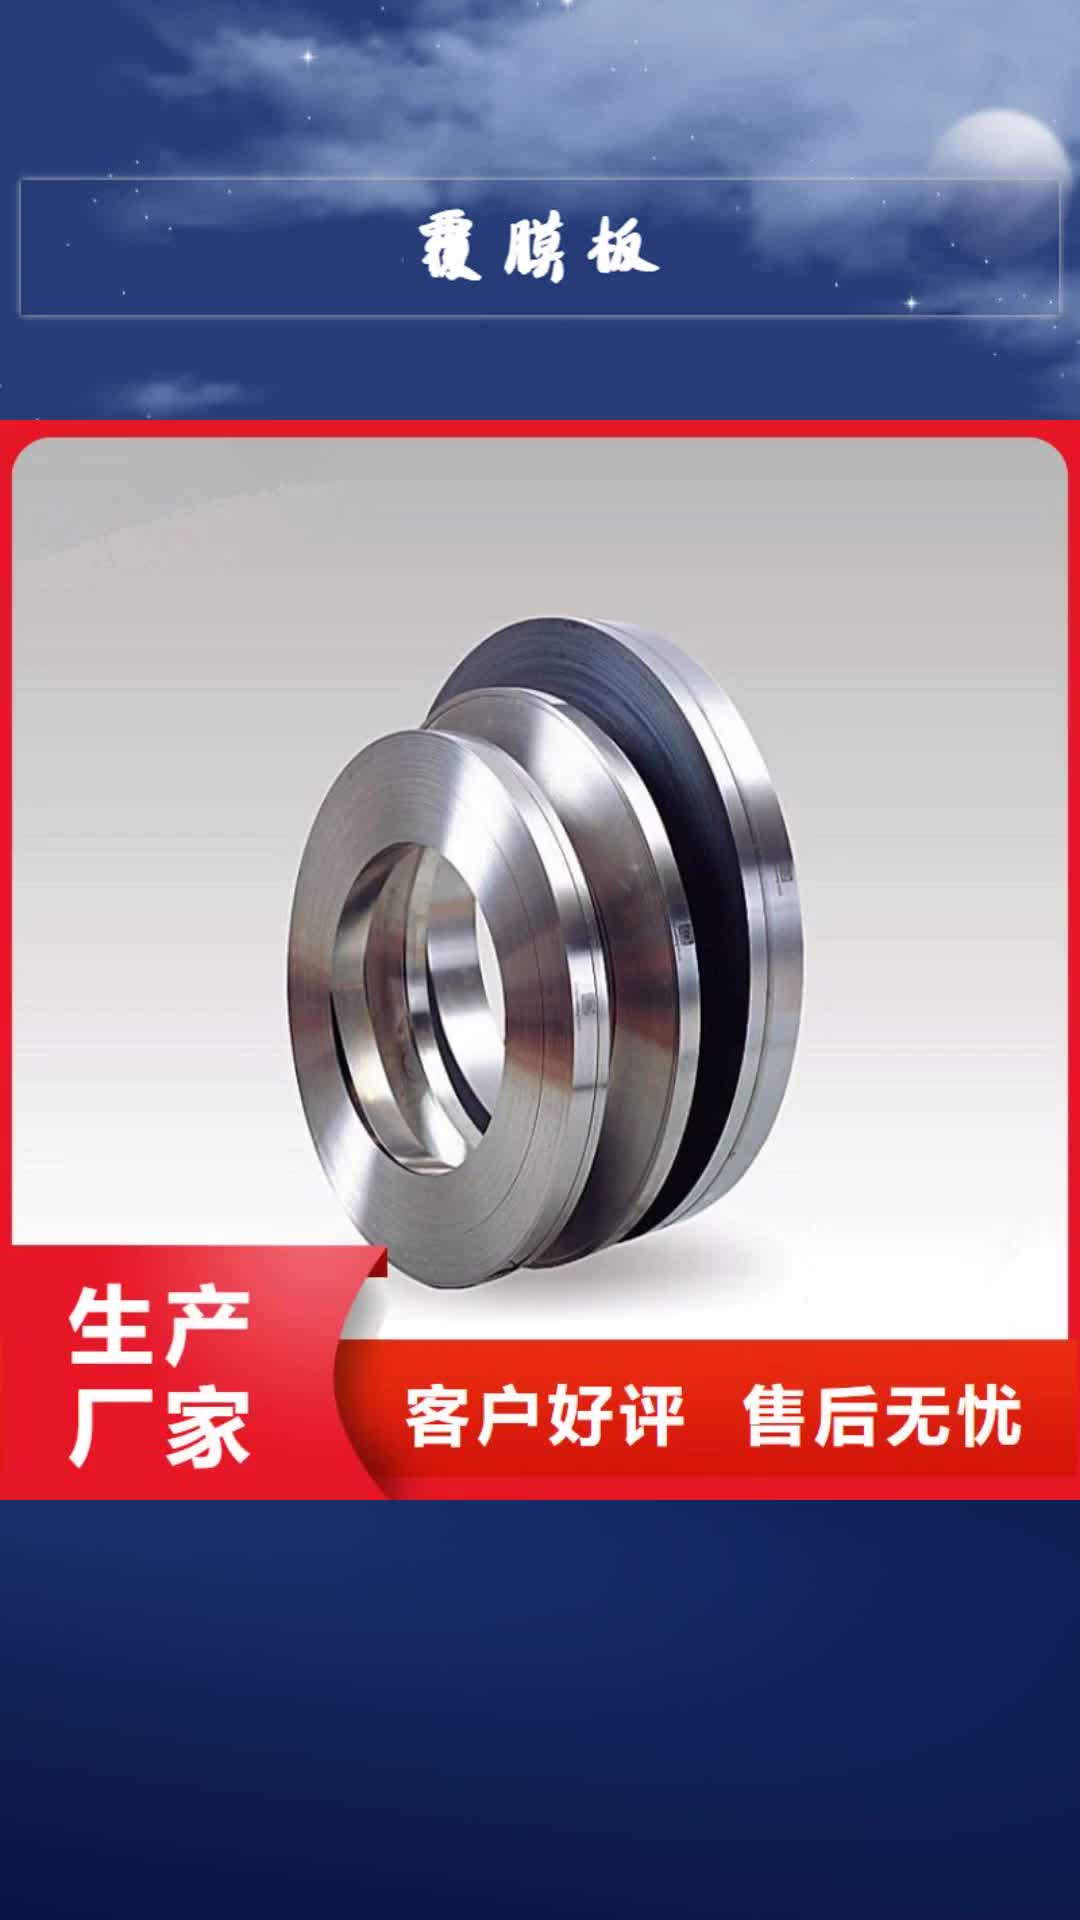 台湾【覆膜板】-汽车钢专业生产设备